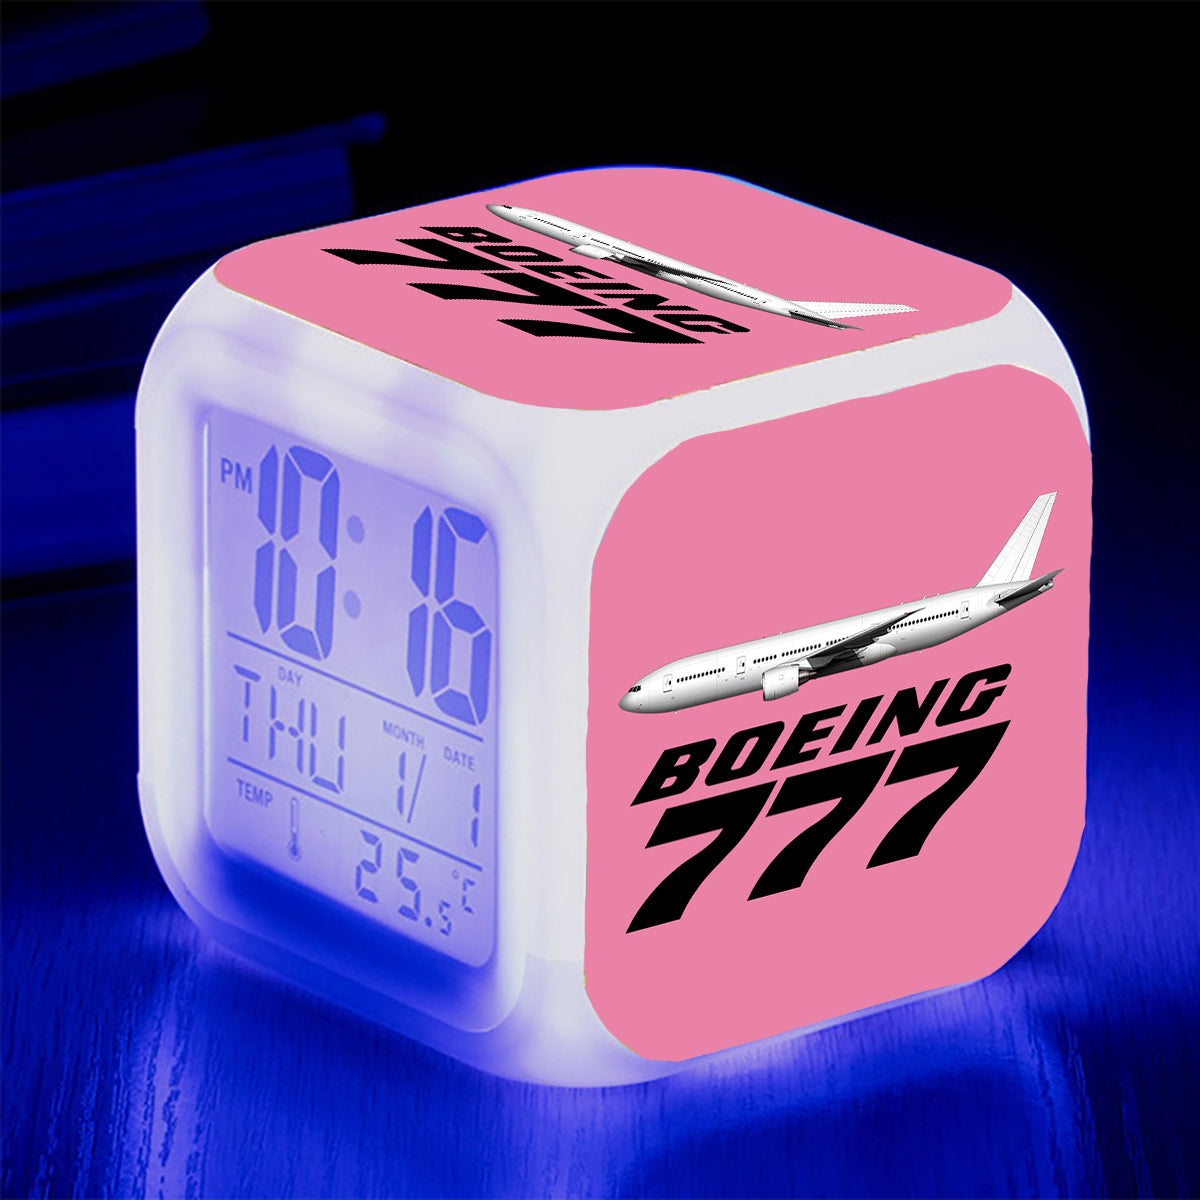 The Boeing 777 Designed "7 Colour" Digital Alarm Clock